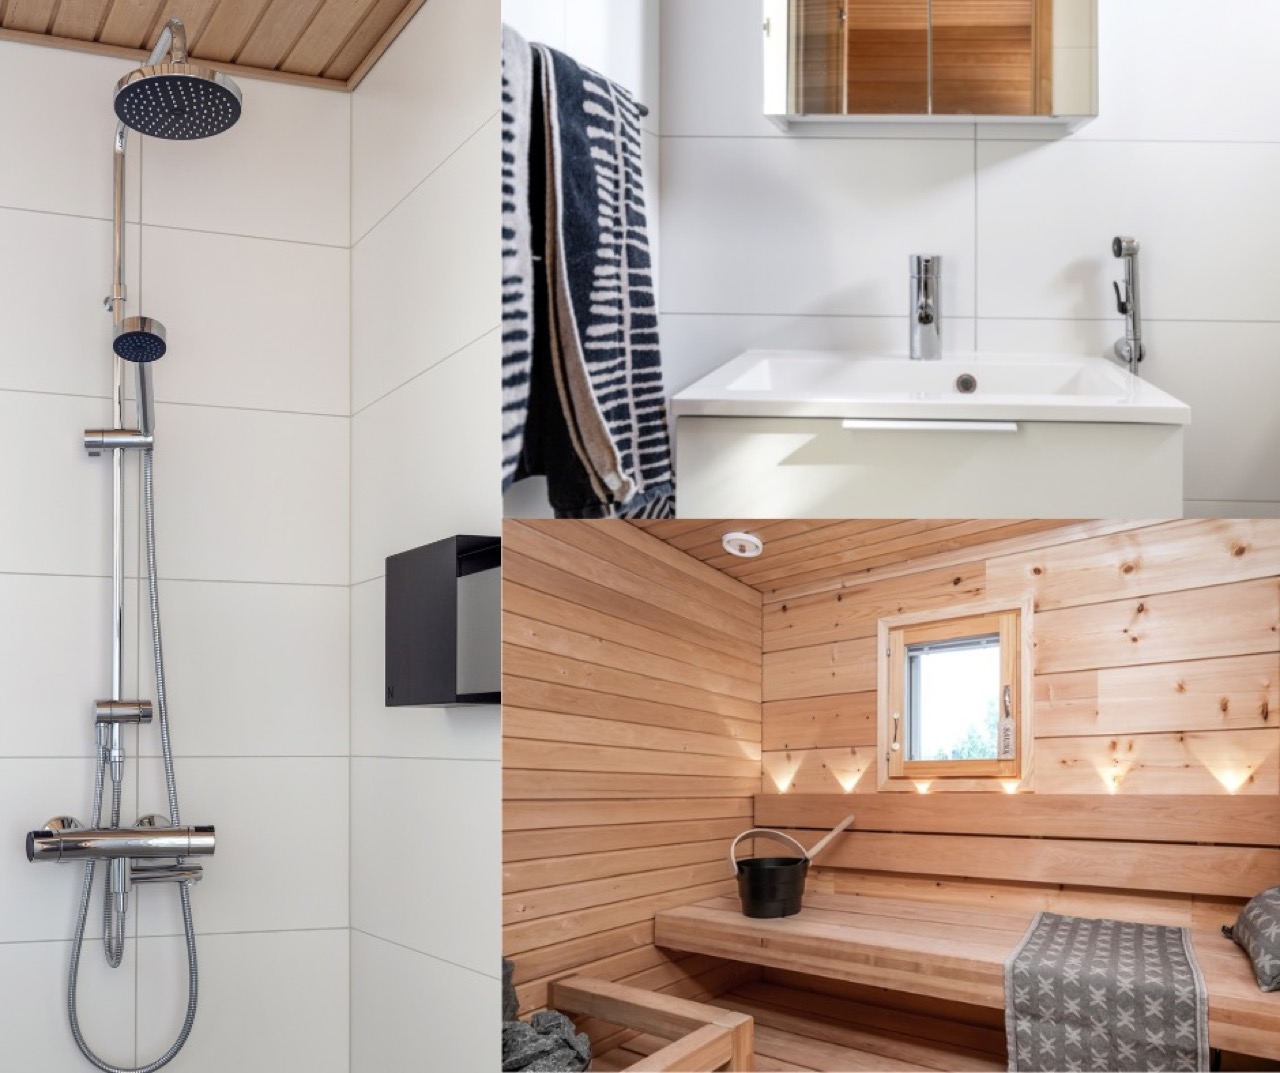 Kuvassa moderni sadesuihku, wc-kalusteita ja sauna, jossa kohdevaloja.